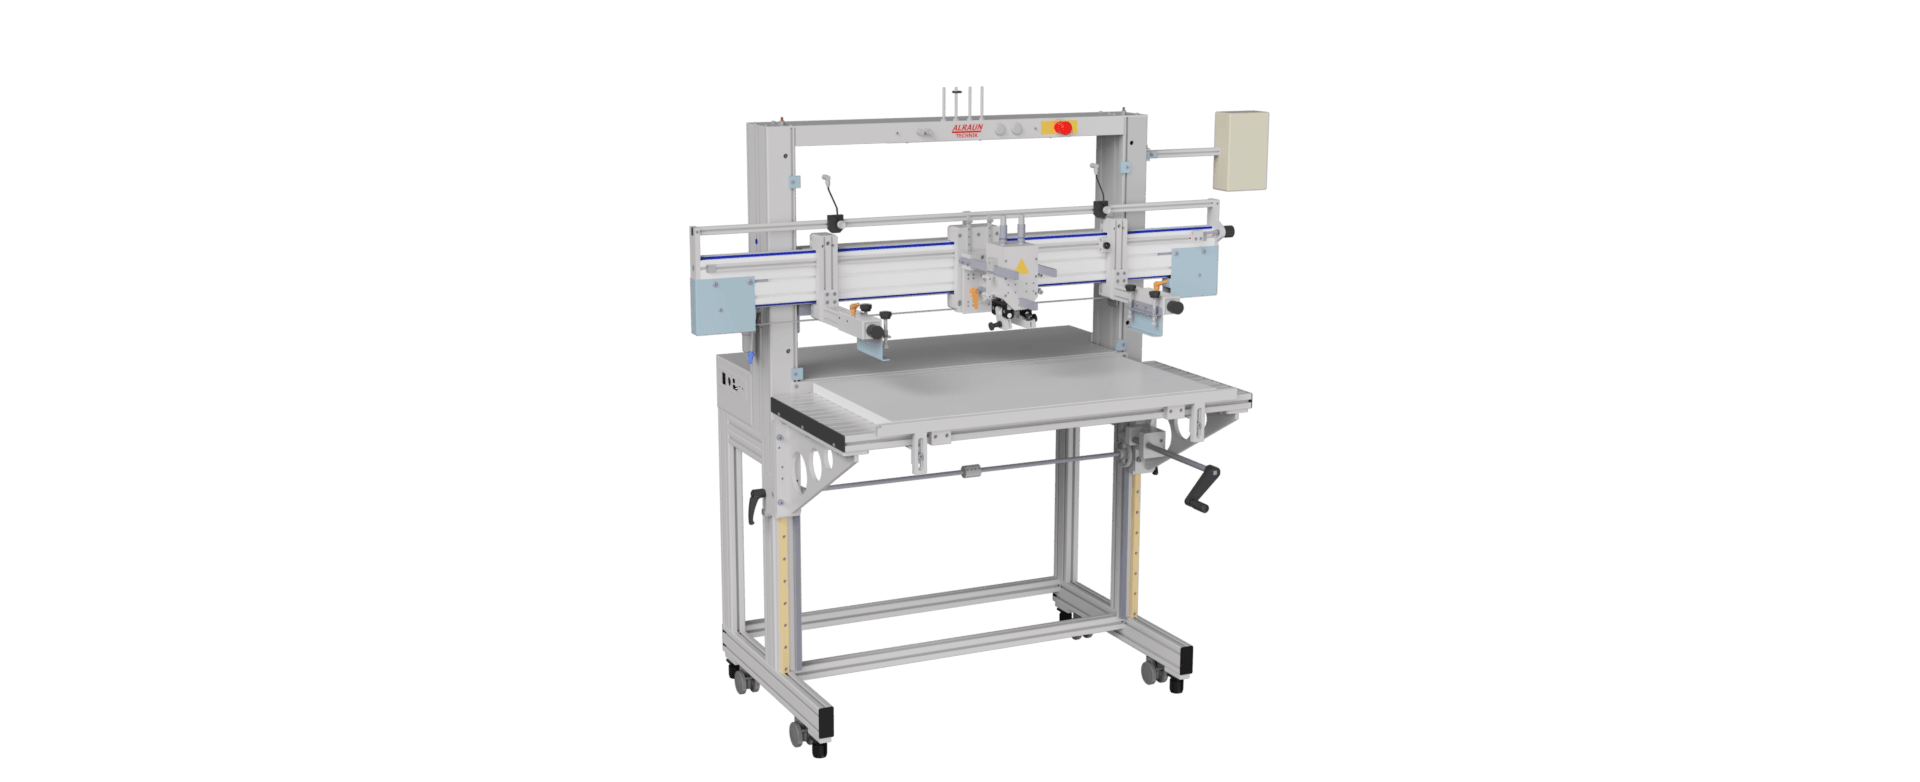 SD-Siebdruckmaschinen, Siebdrucktechnik, Siebdruck Halbautomaten,